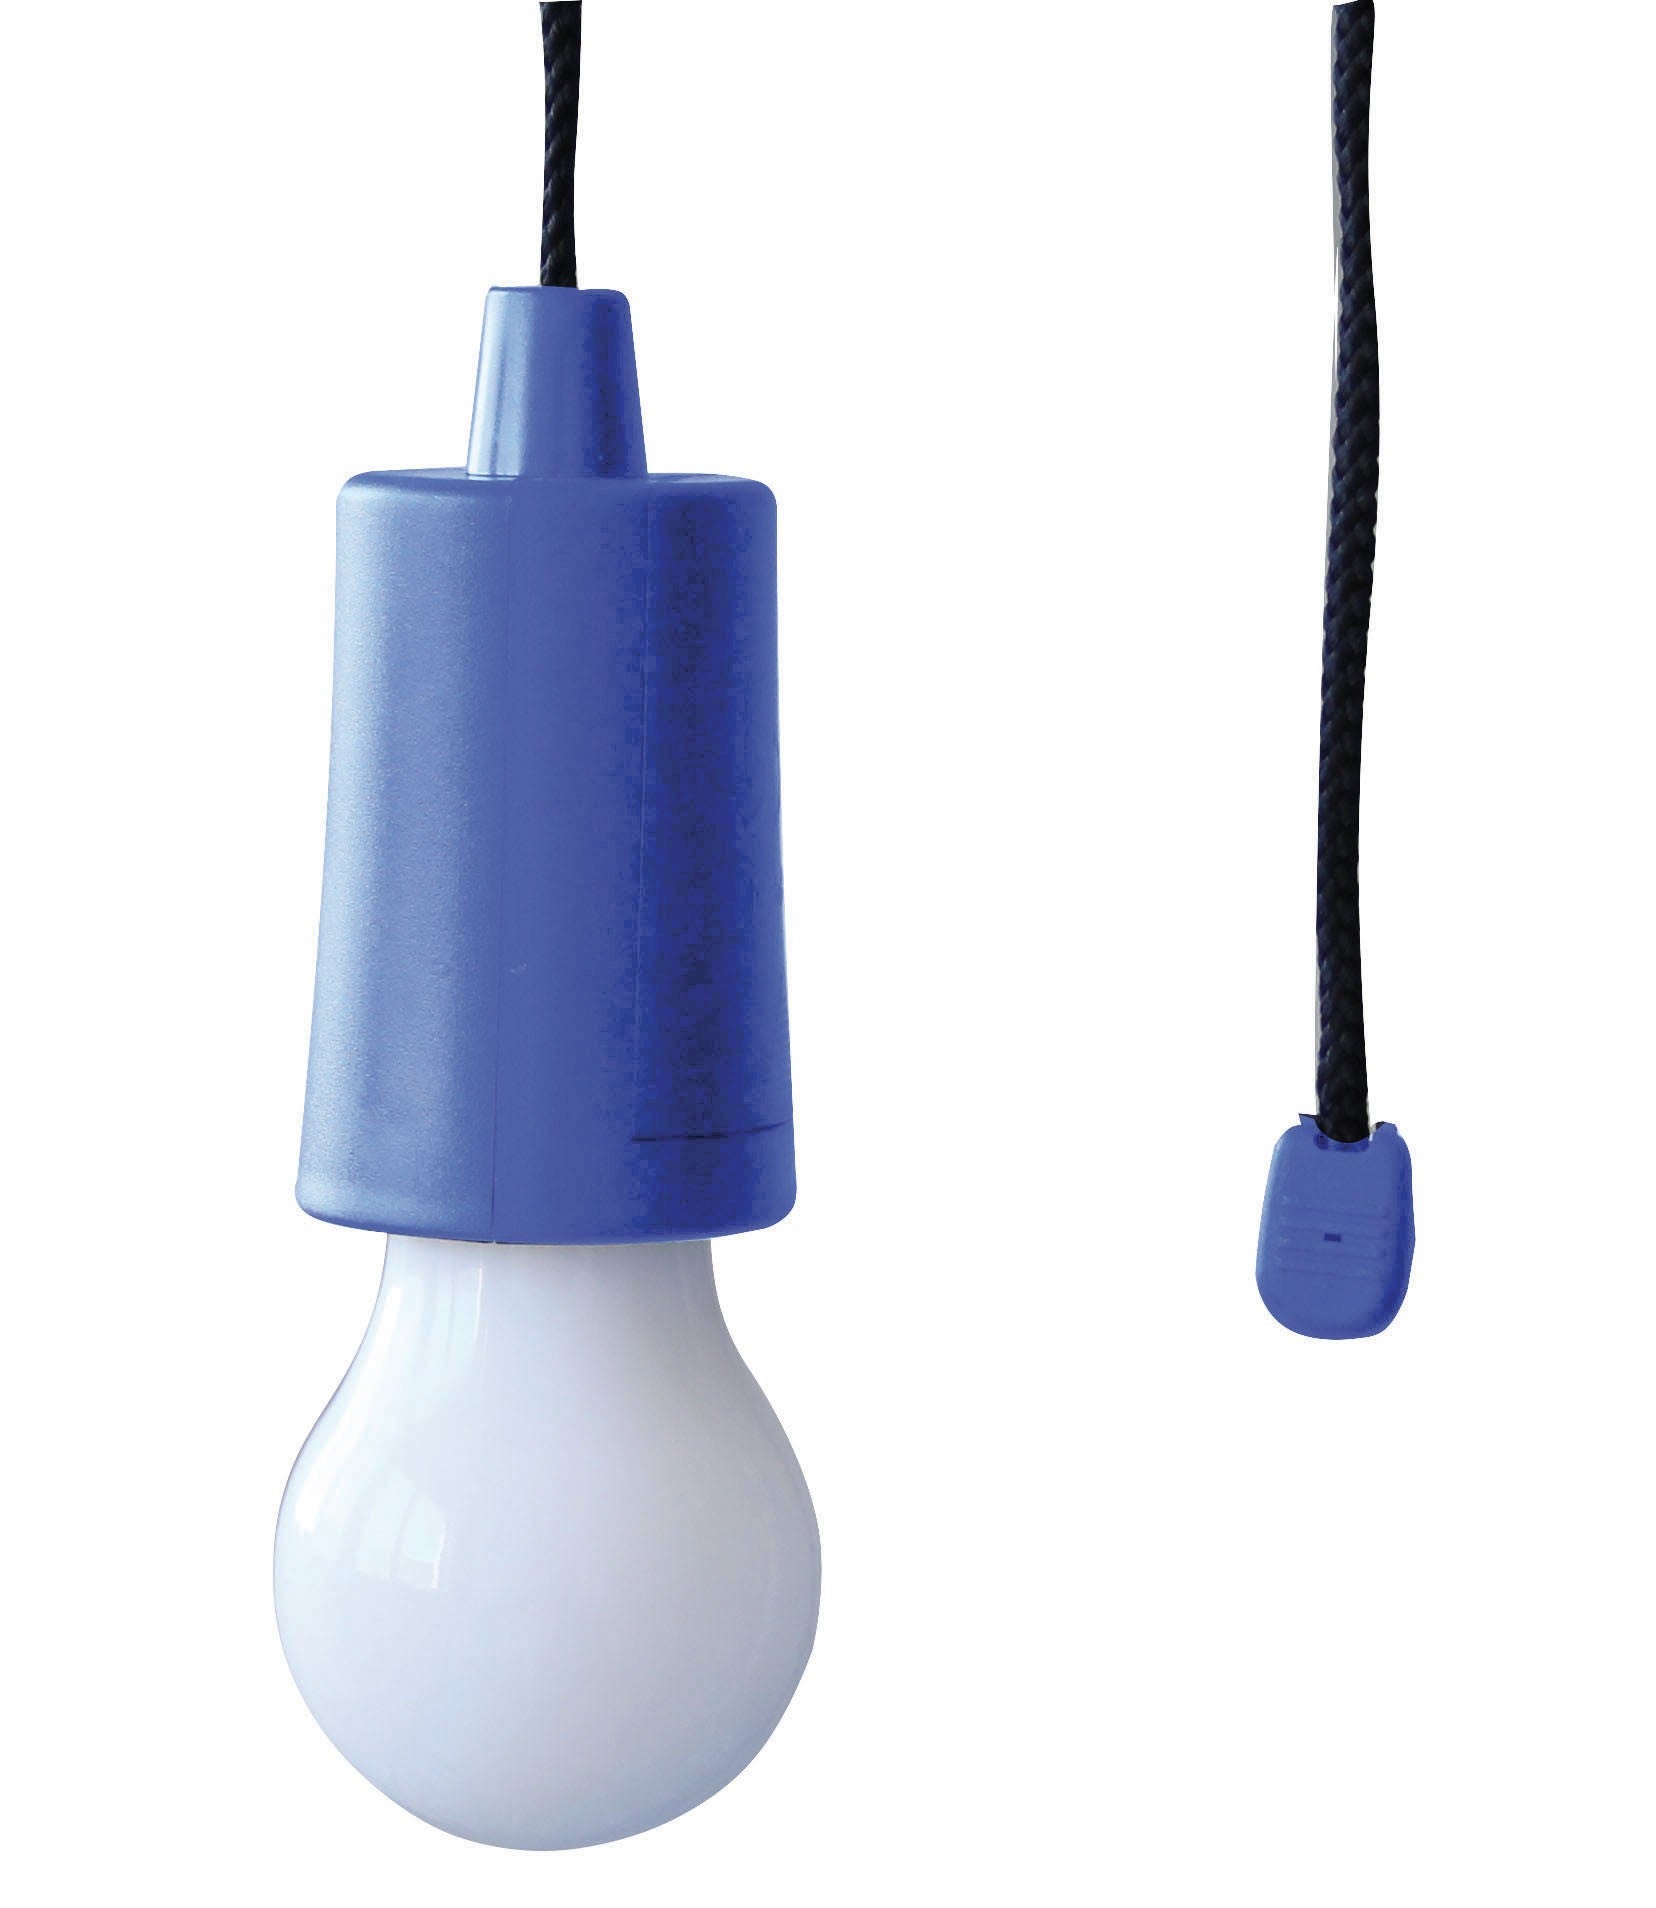 RETRO' : Ampoule LED à piles (3AAA non fournies) avec cordon. Bleu